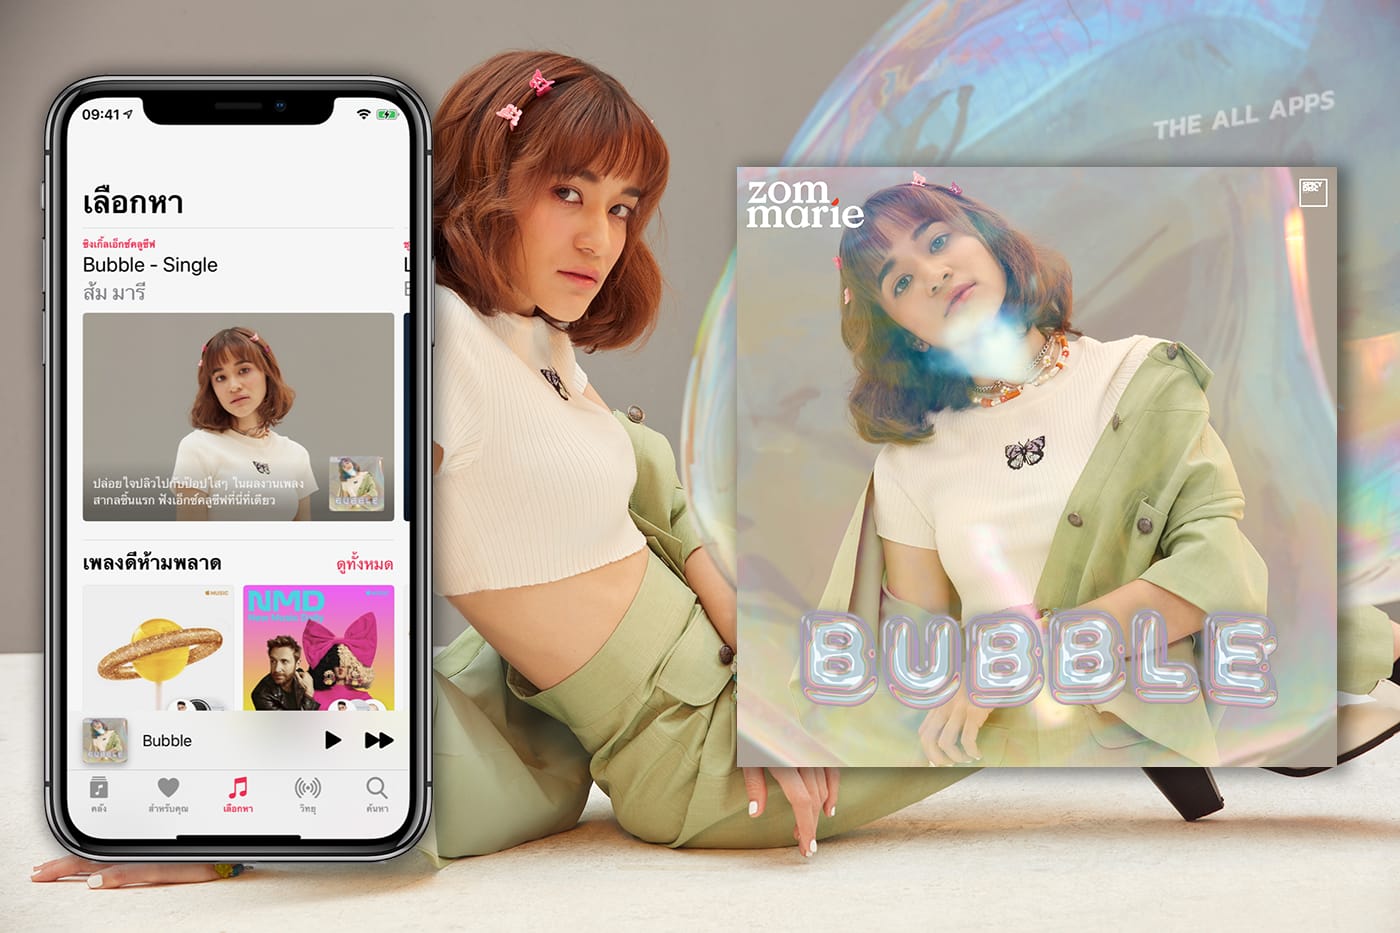 “Bubble” ผลงานอินเตอร์ครั้งแรกของส้ม มารี ฟังก่อนใครได้แล้ววันนี้บน Apple Music